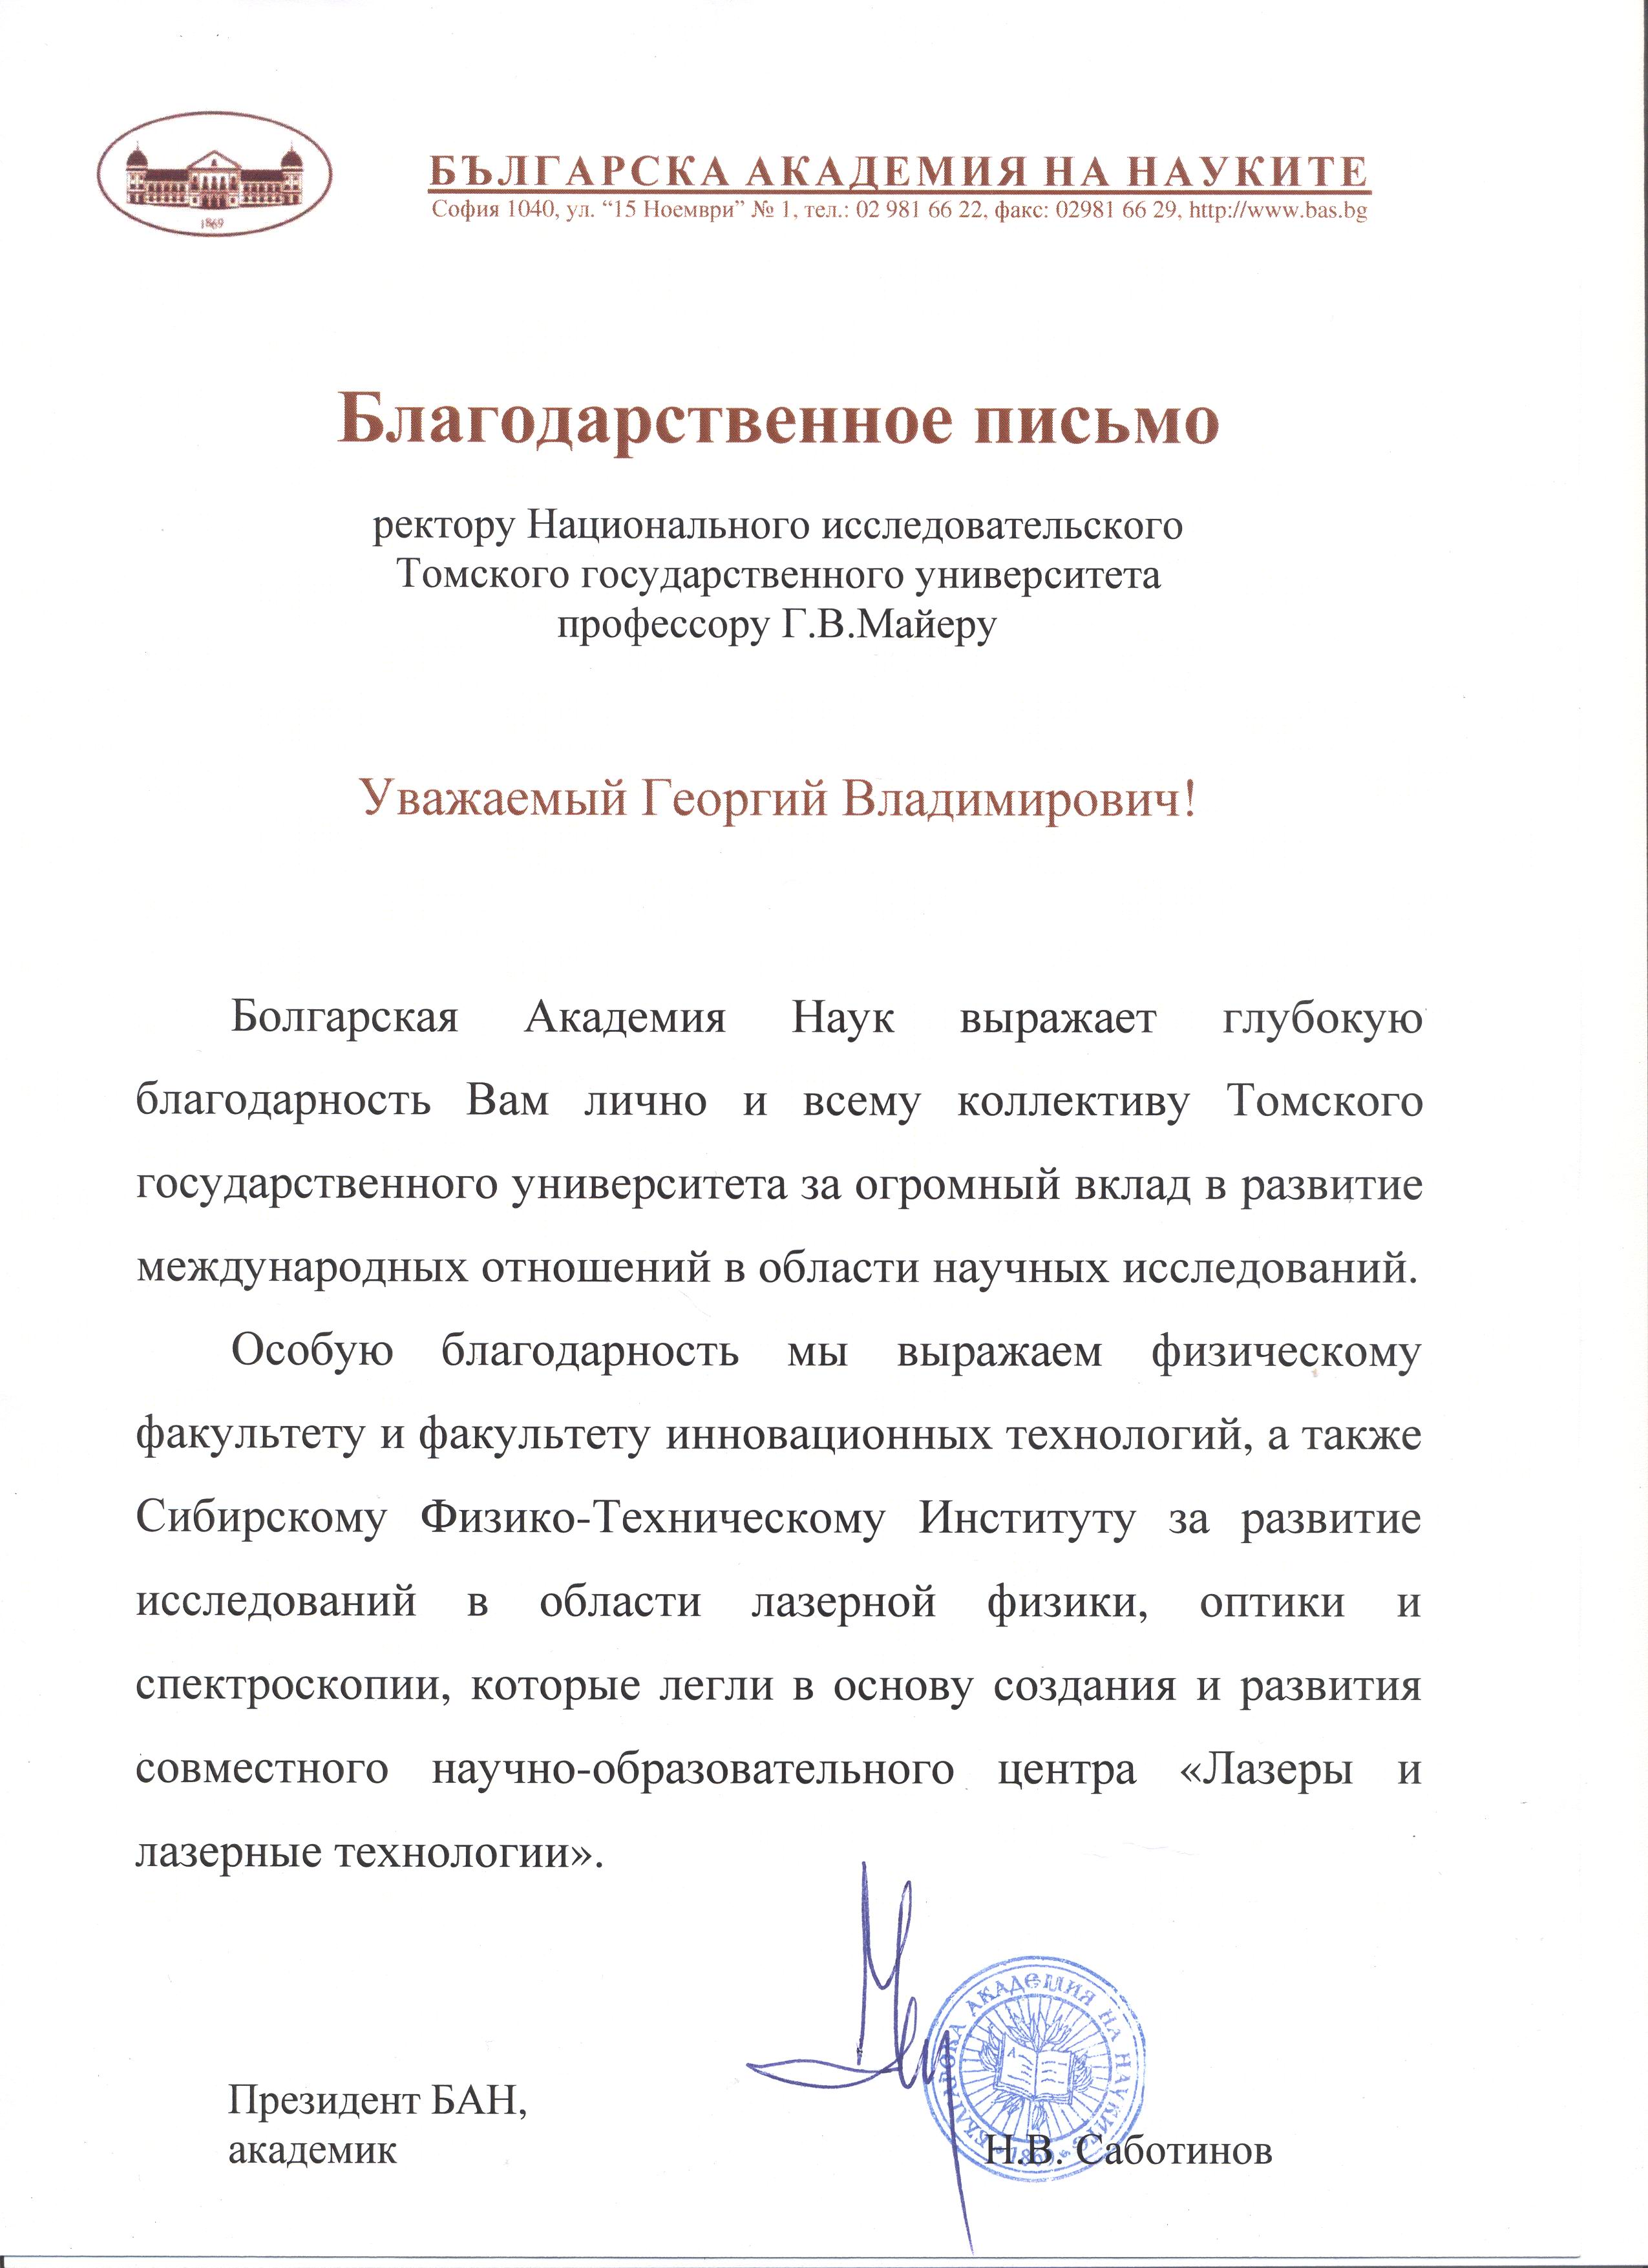 Благодарственное письмо от Болгарской академии наук